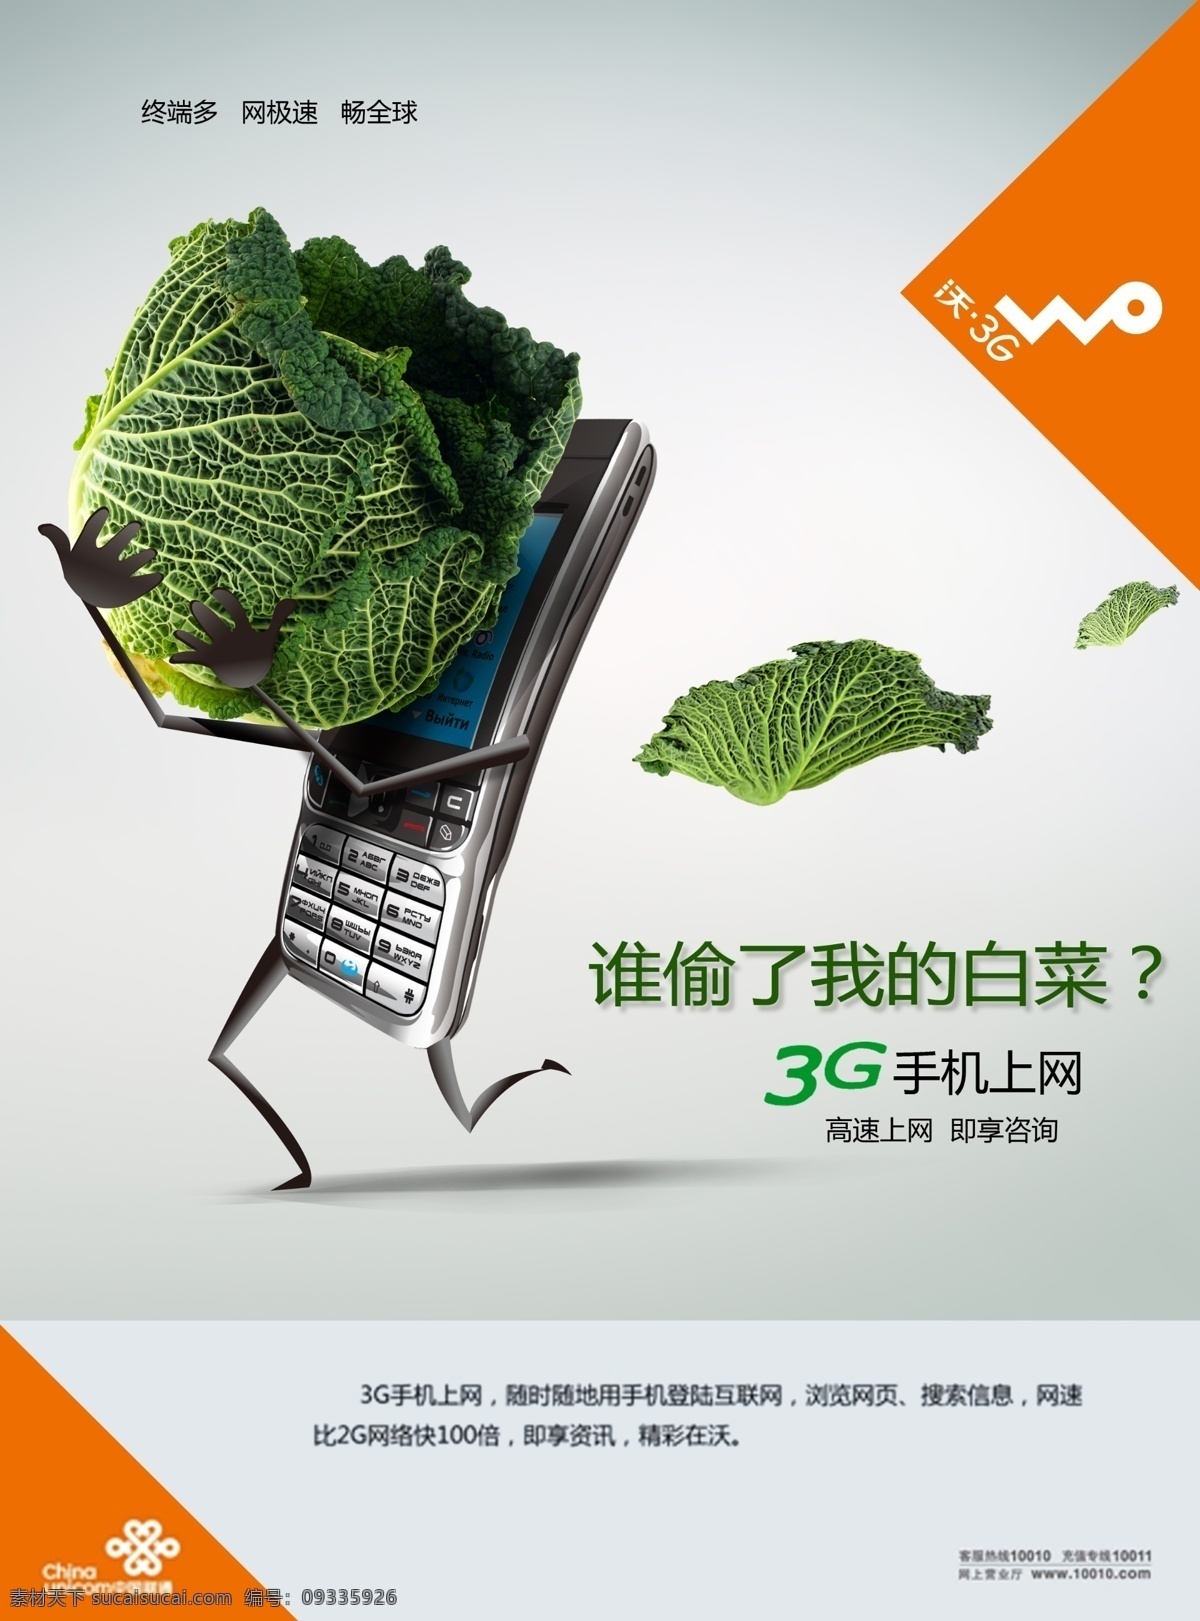 中国移动 3g 手机上网 广告 白菜 上网 手机 3g沃 psd源文件